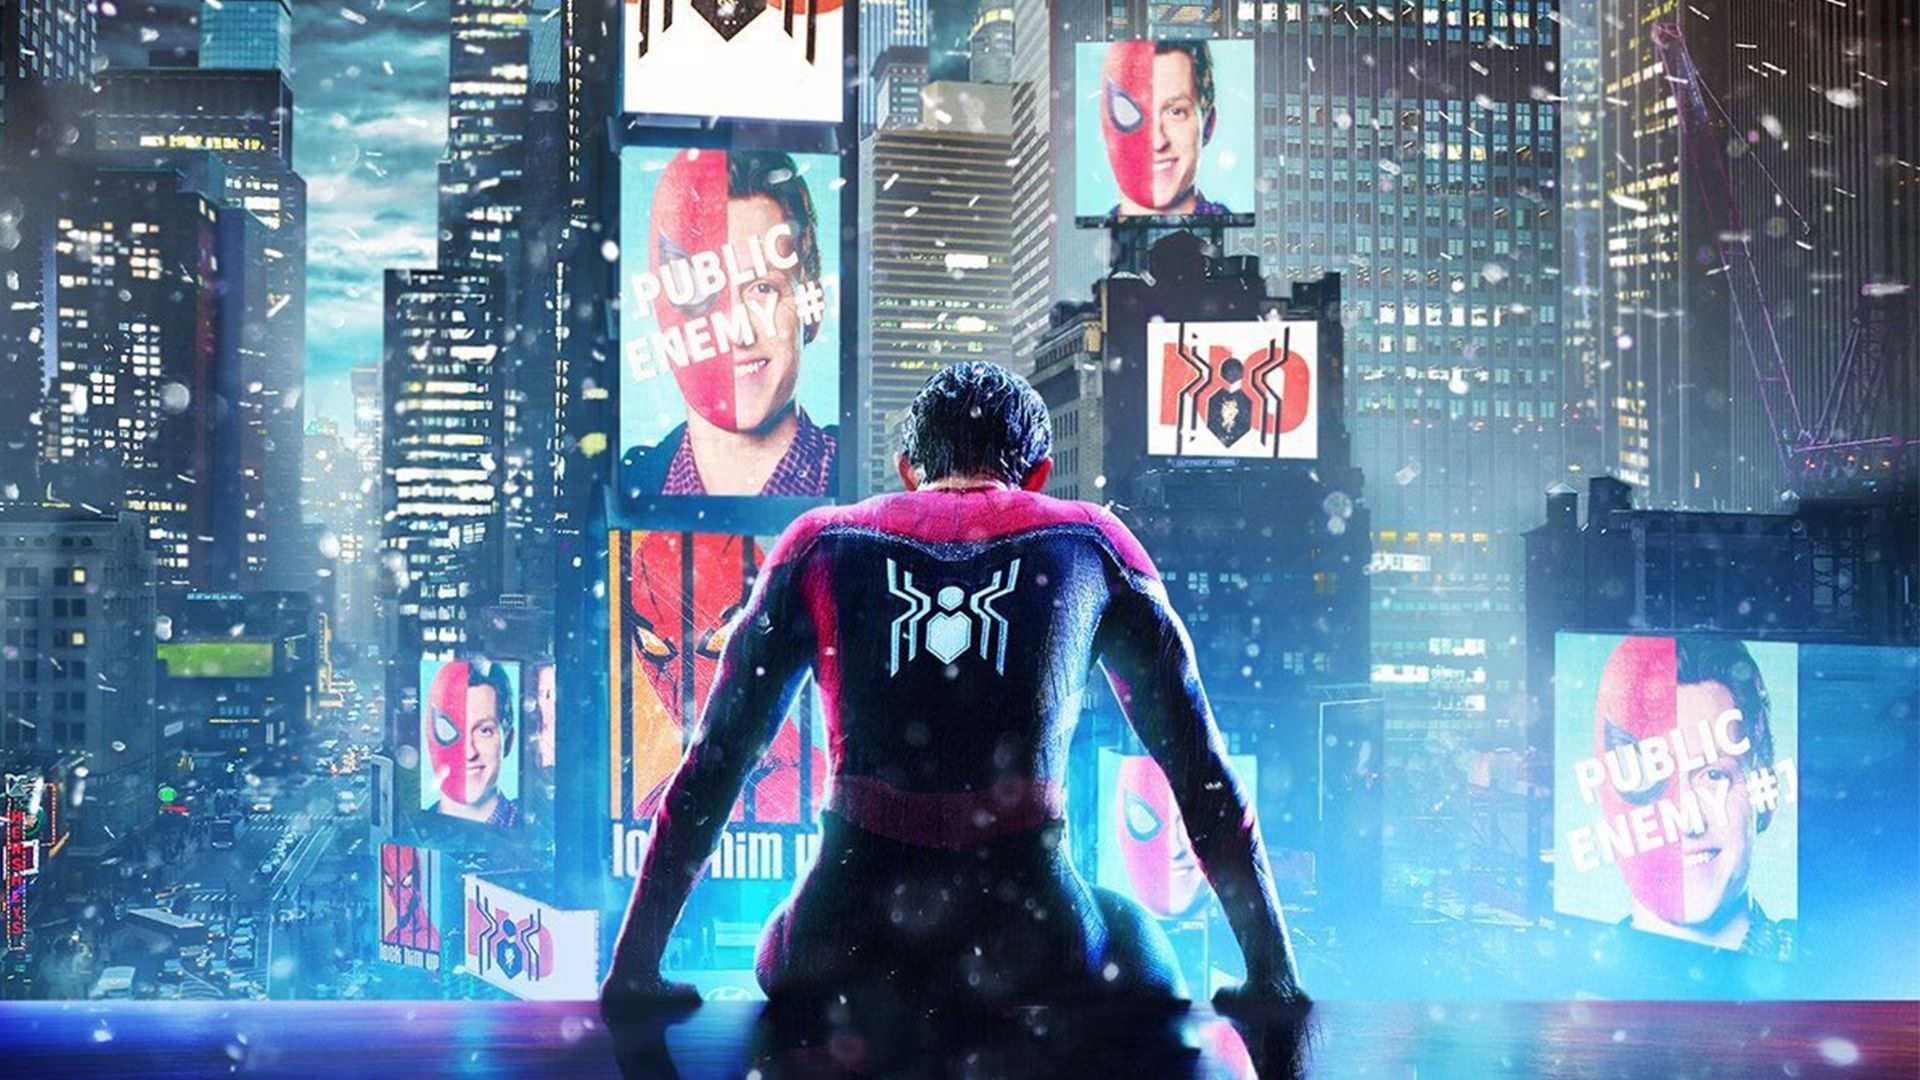 تام هالند در نقش مرد عنکبوتی ناراحت زیر باران و در شب روی ساختمان نشسته در پوستر فیلم Spider-Man: No Way Home